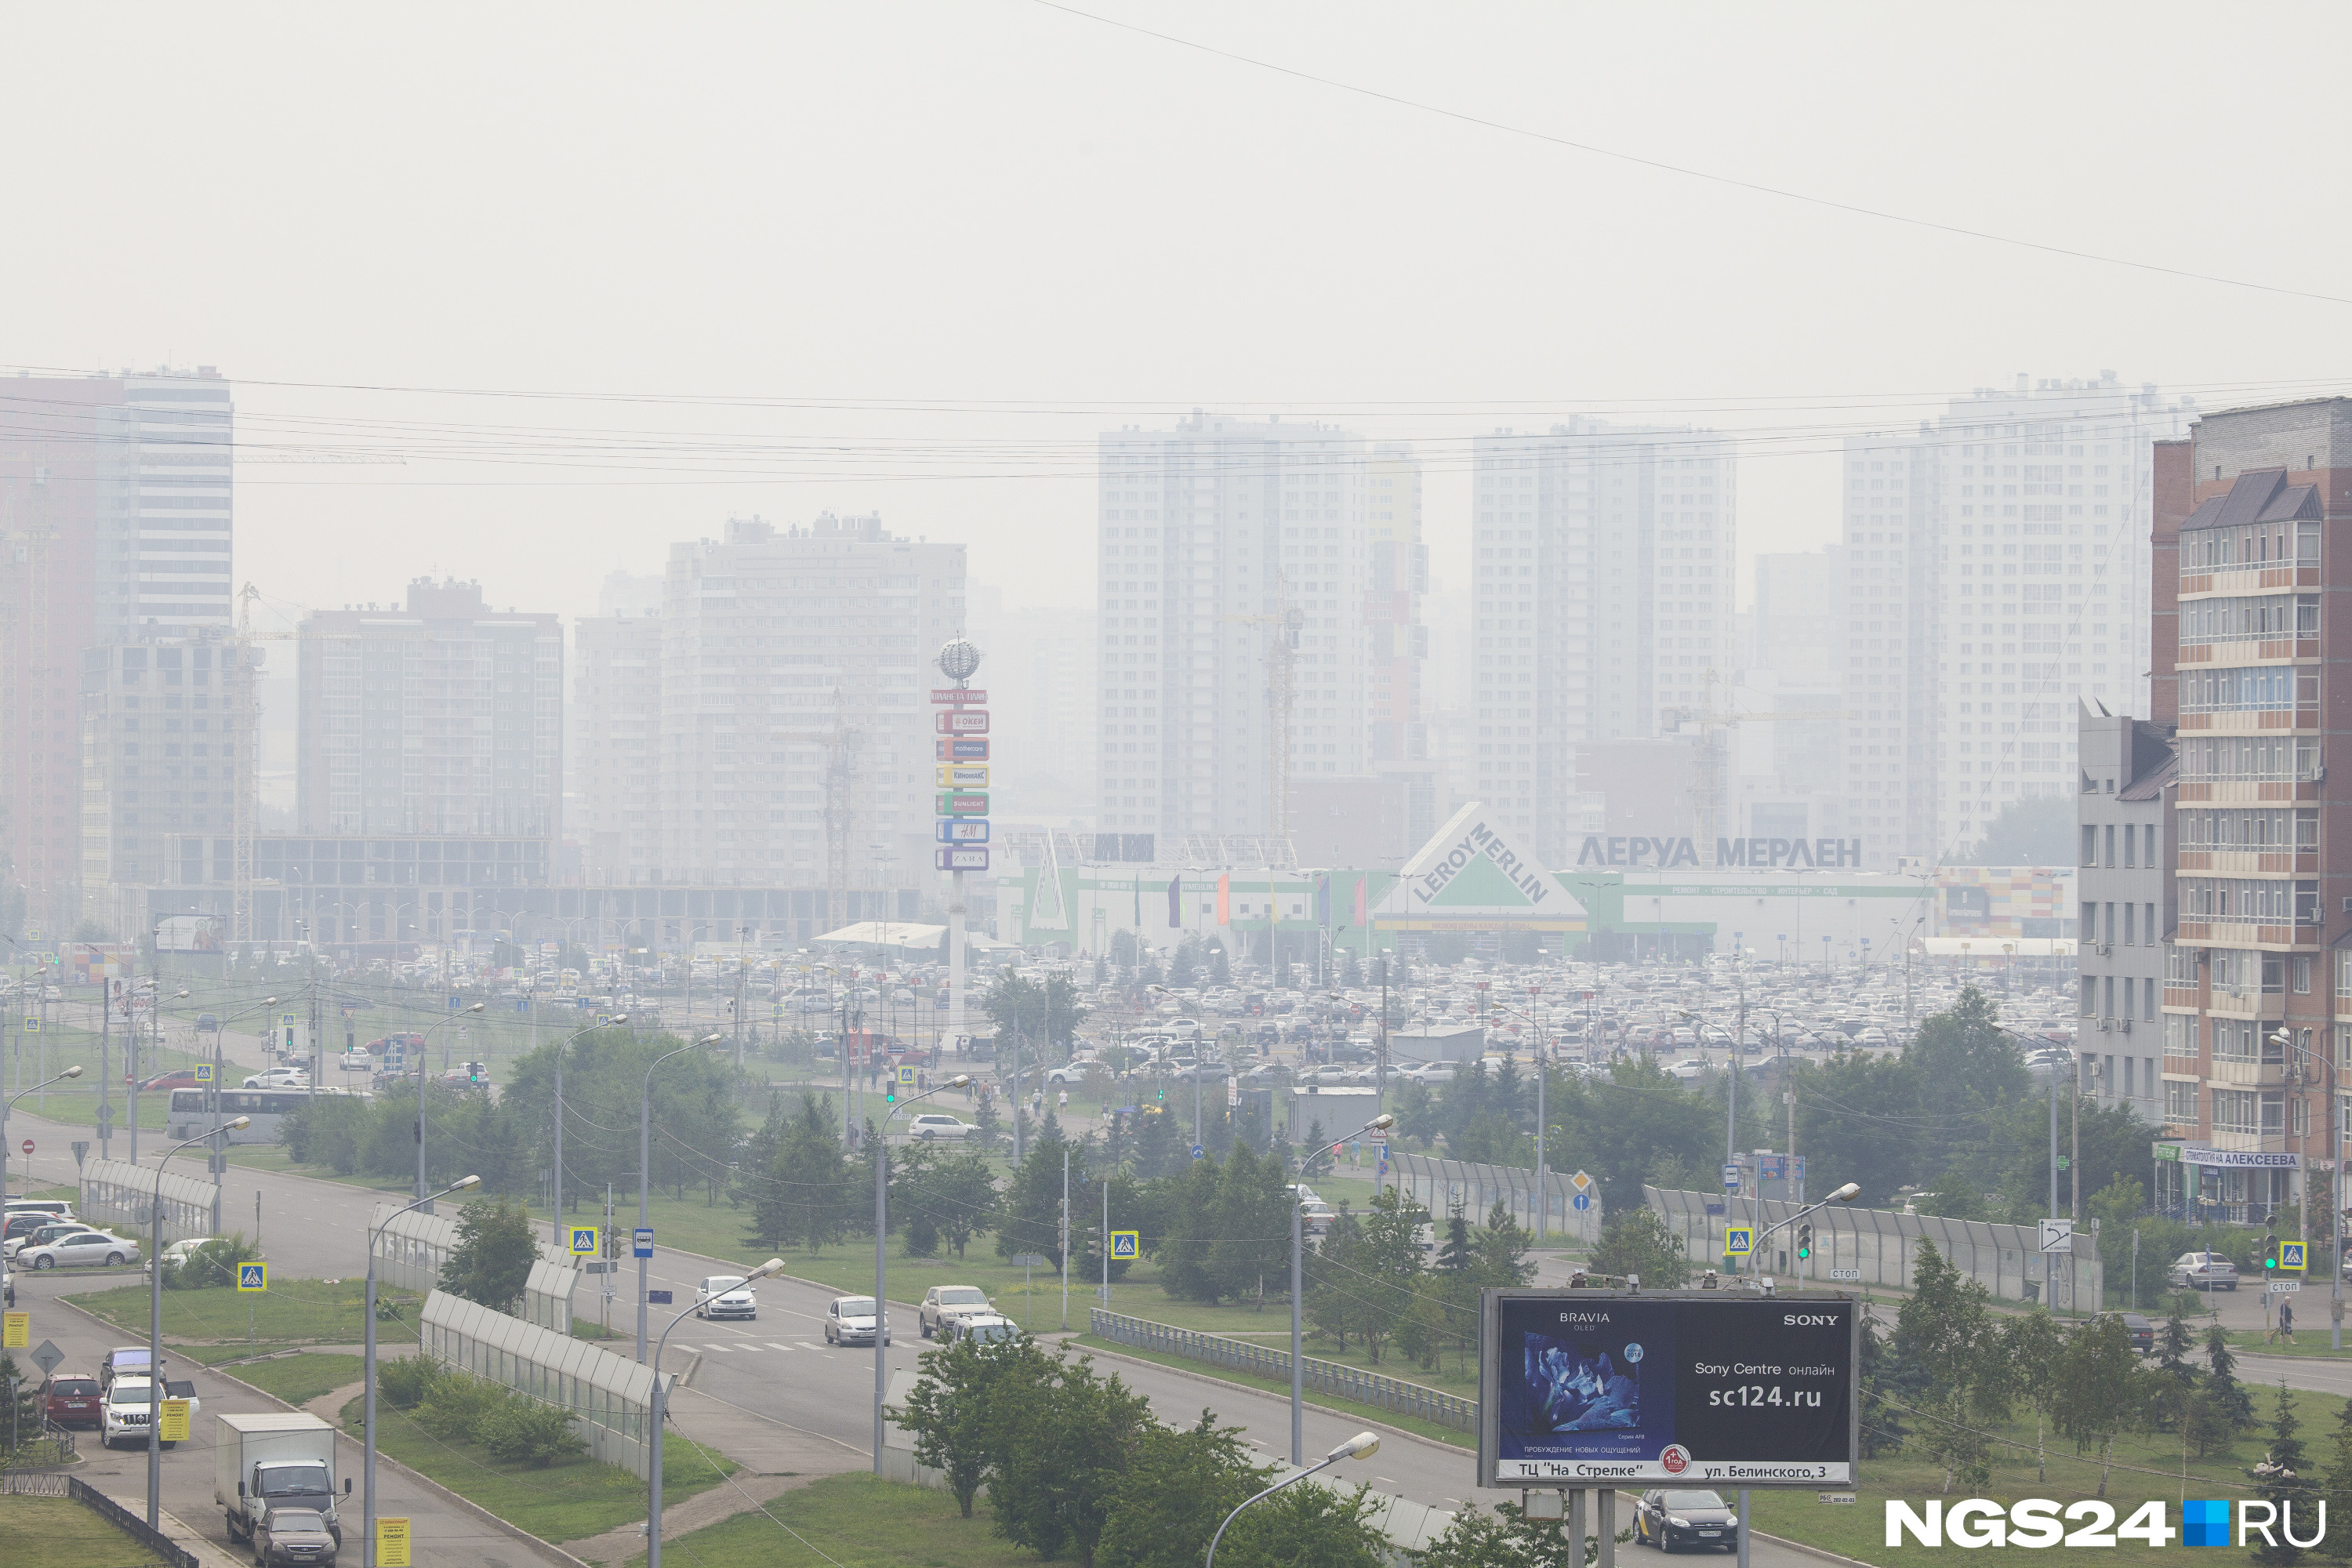 По этому снимку можно определить видимость в Красноярске — чуть более километра